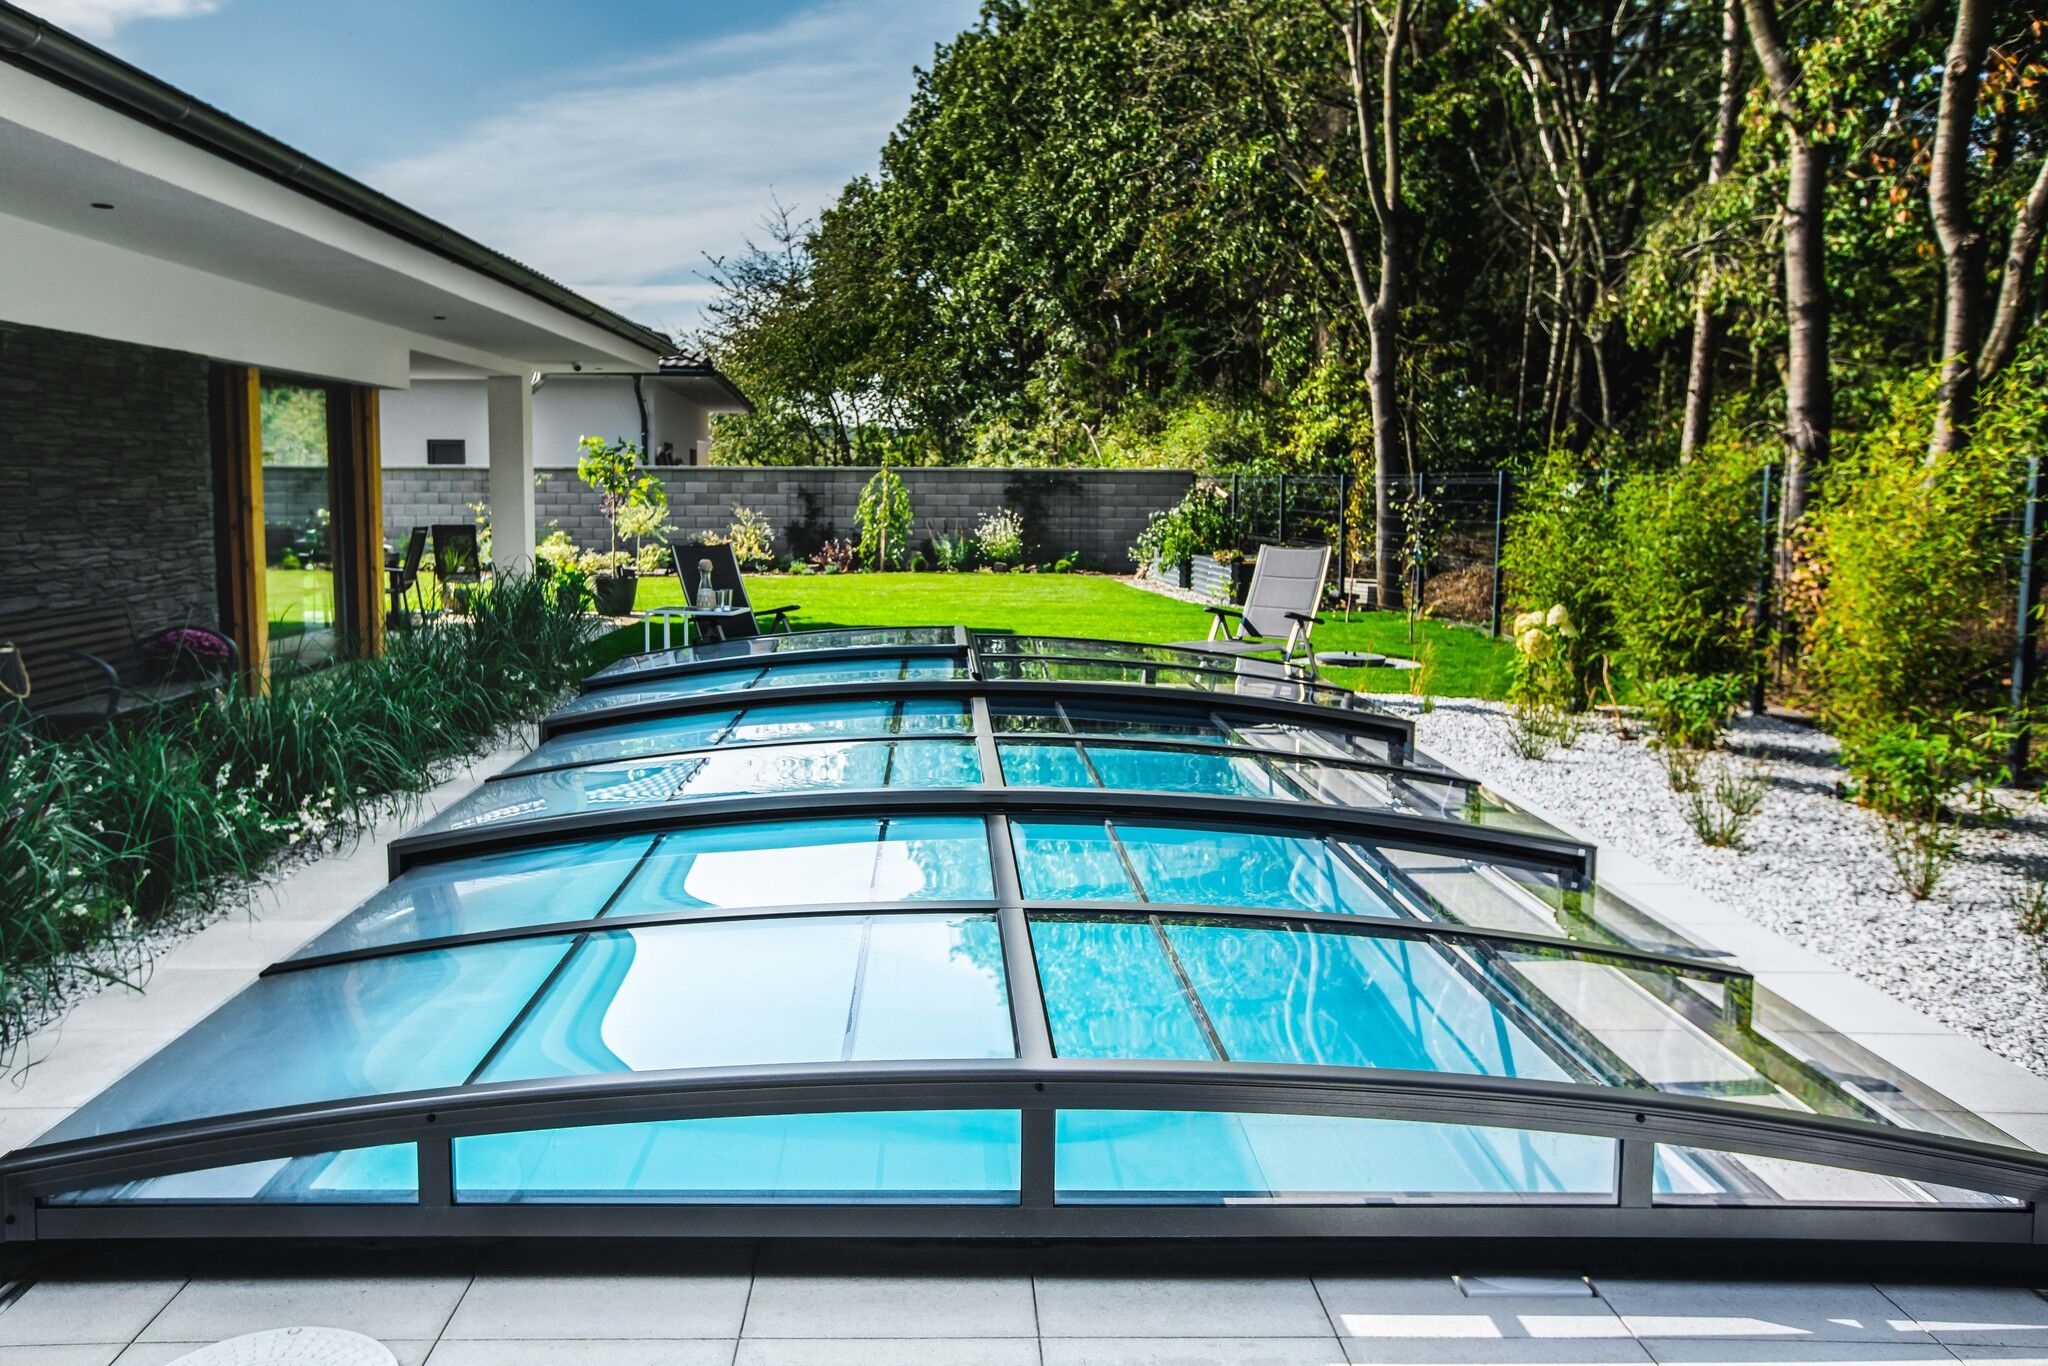 low pool enclosure